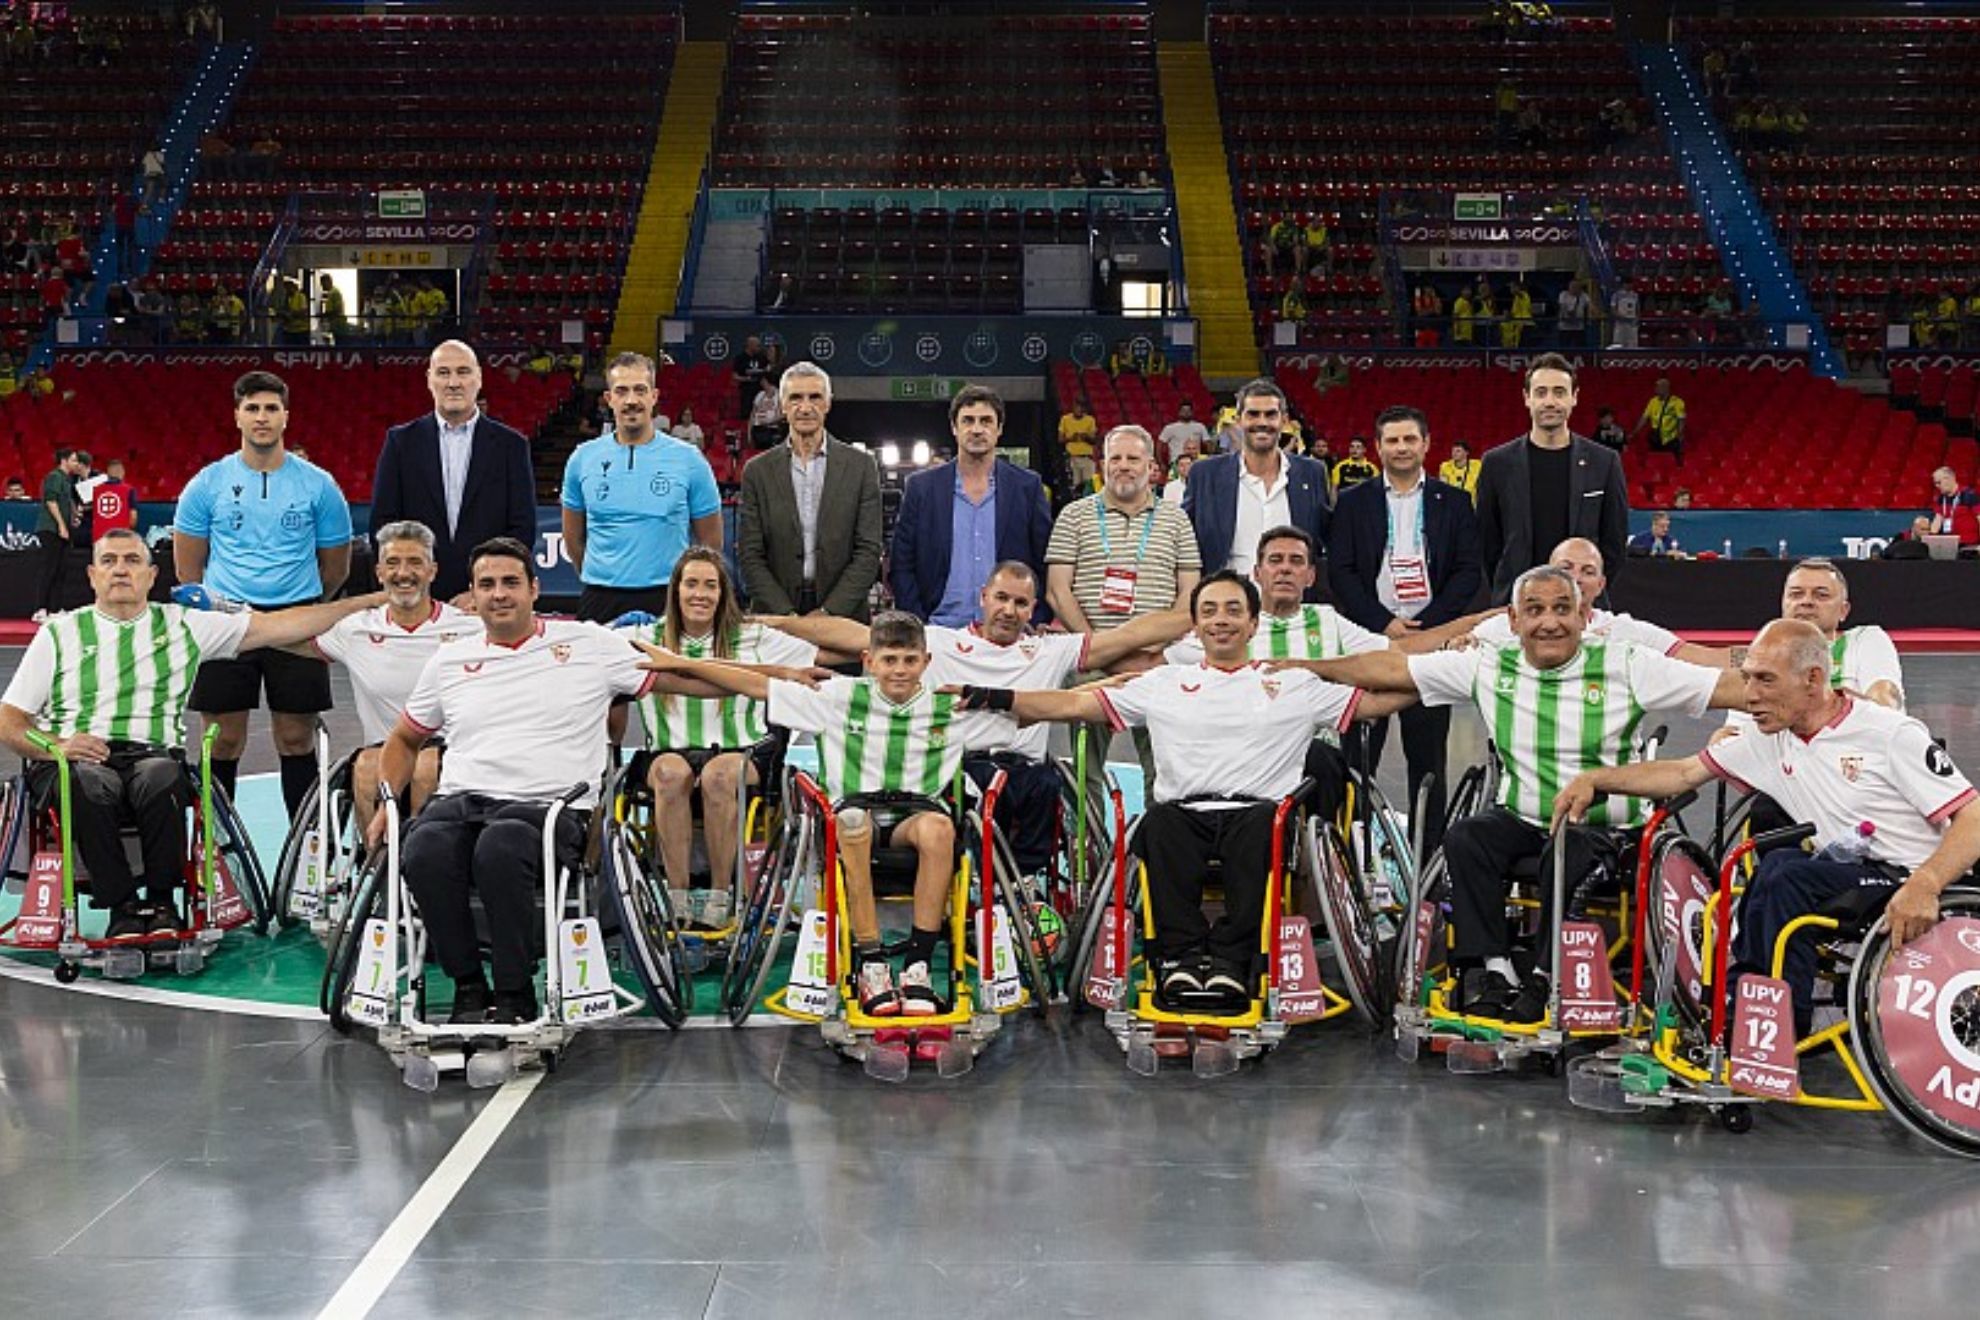 Equipos de las Fundaciones de Betis y Sevilla presentaron el A-Ball o f�tbol en silla de ruedasm, durante la Copa del Rey de F�tbol Sala